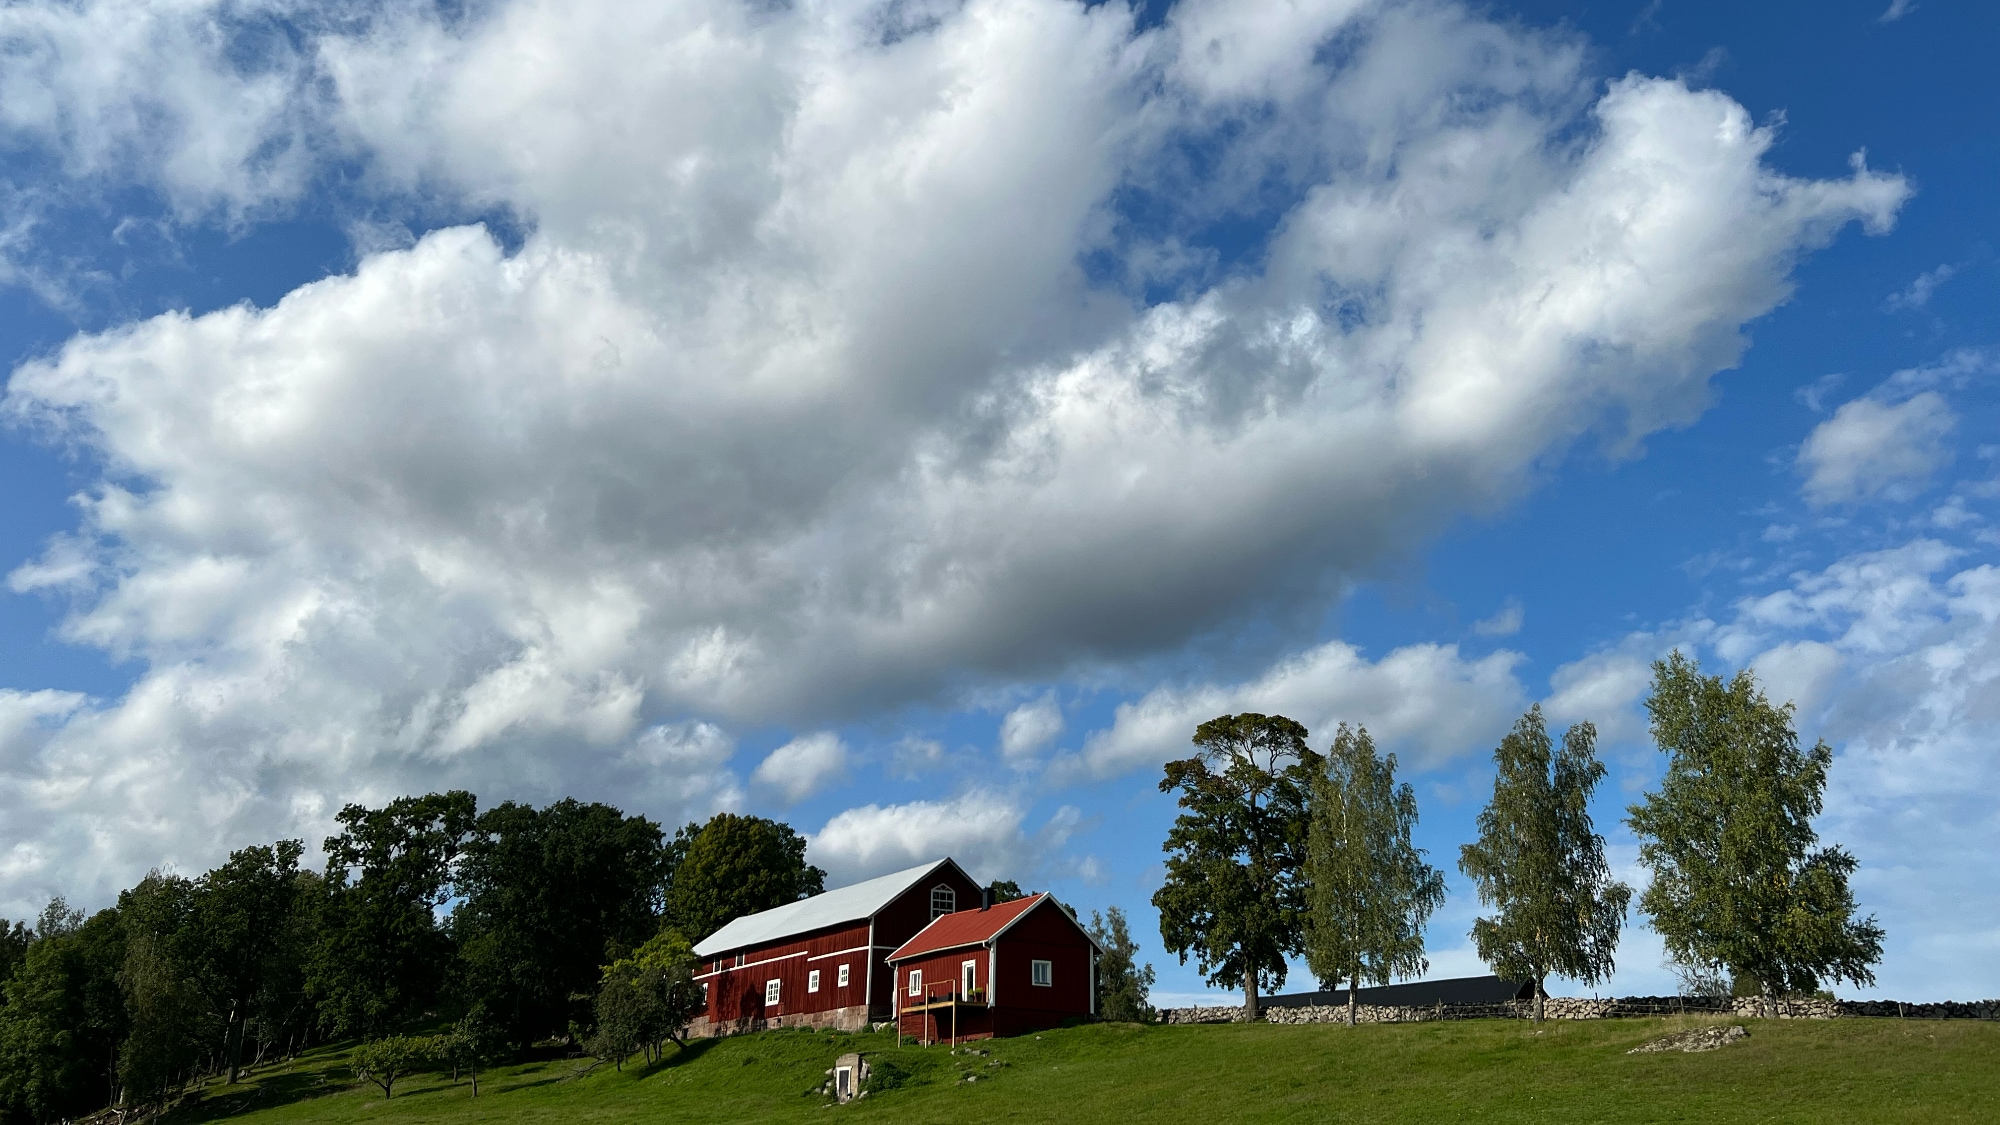 A photo taken near Tåby in Vikbolandet.